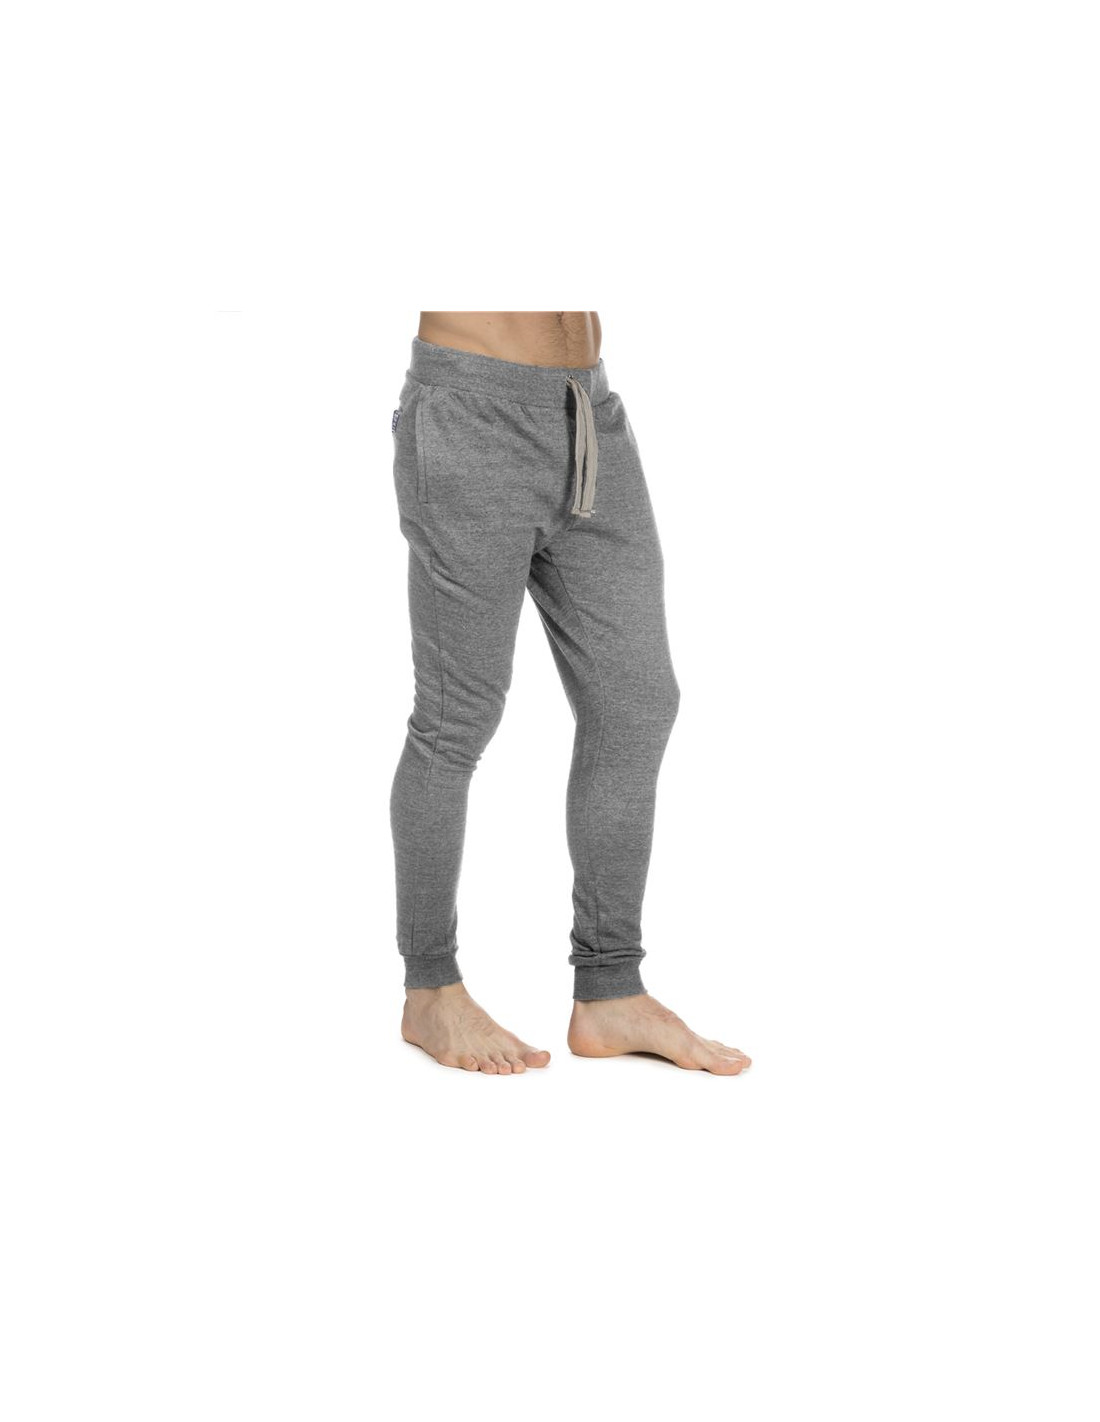 Pantalones koalaroo talos m grey